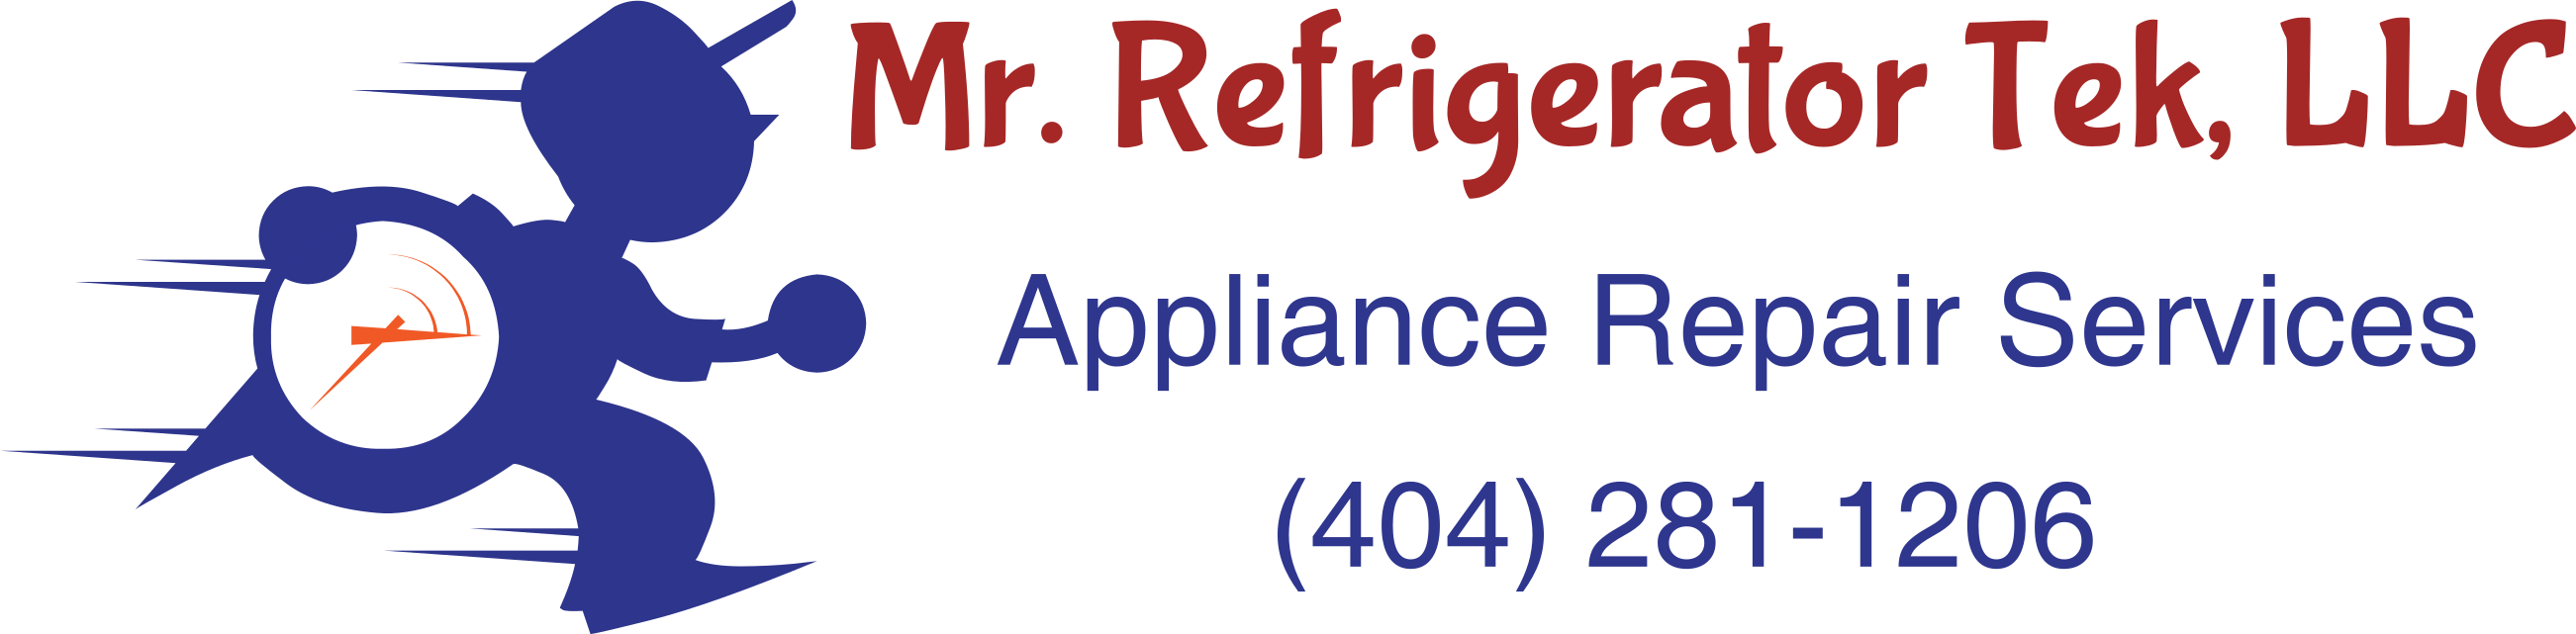 Mr Refrigerator Tek, LLC Expands Service Area to Lawrenceville, GA